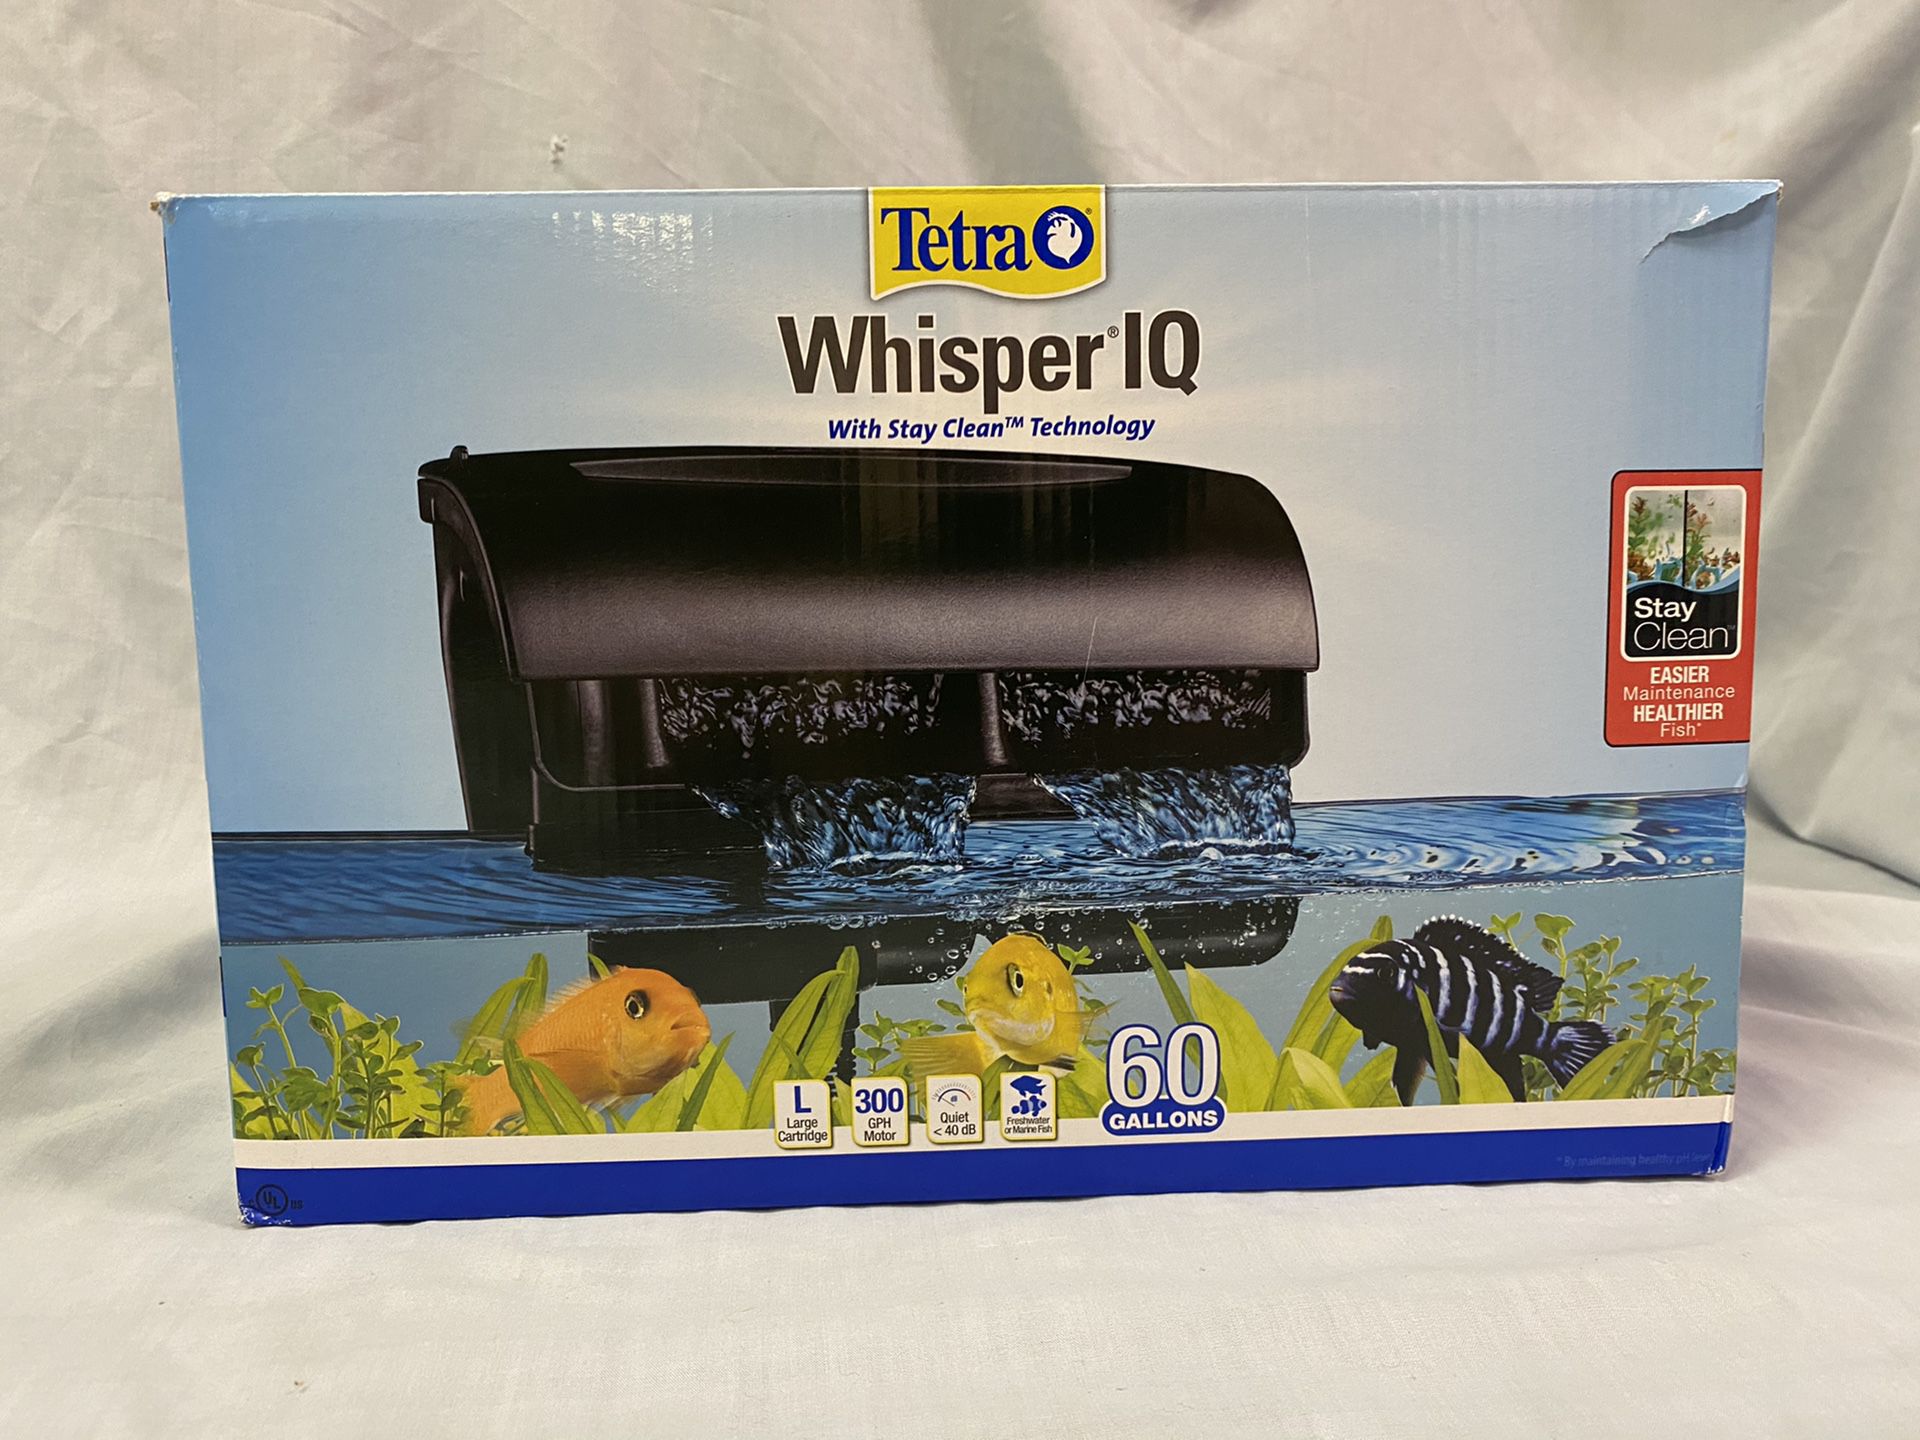 Treta Whisper IQ Aquarium Filter 60 Gallons